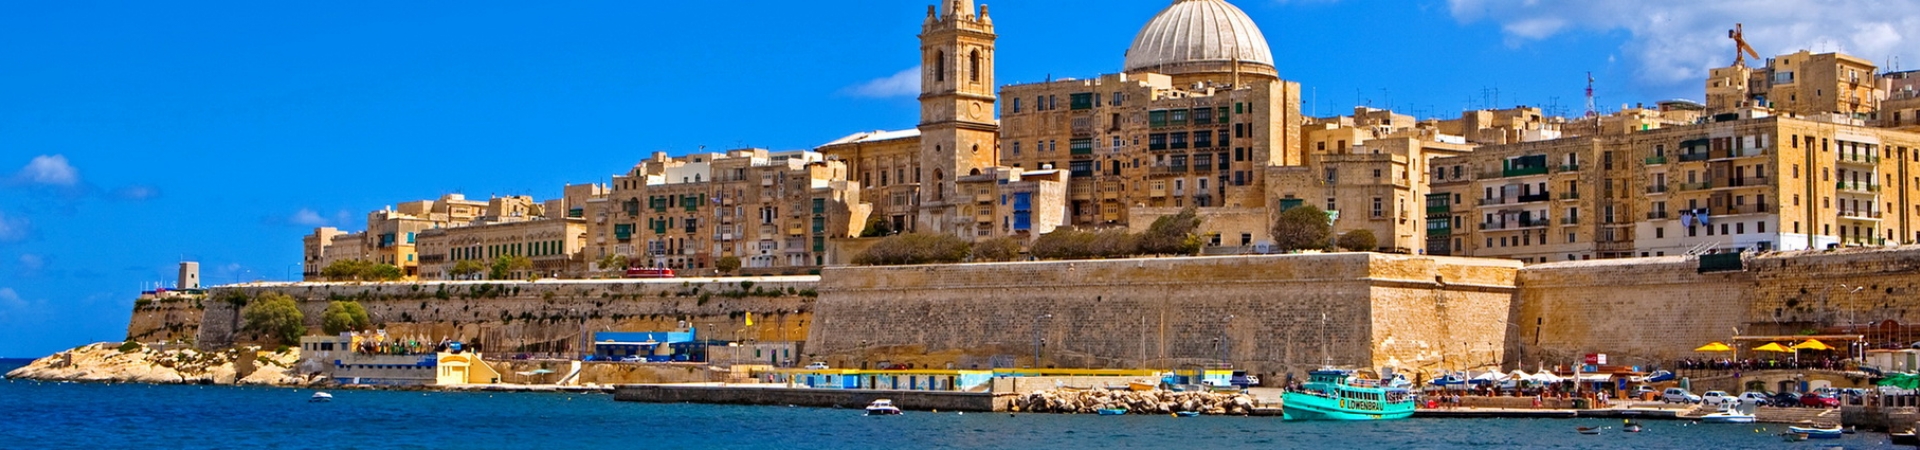 Vacanta Malta 2018